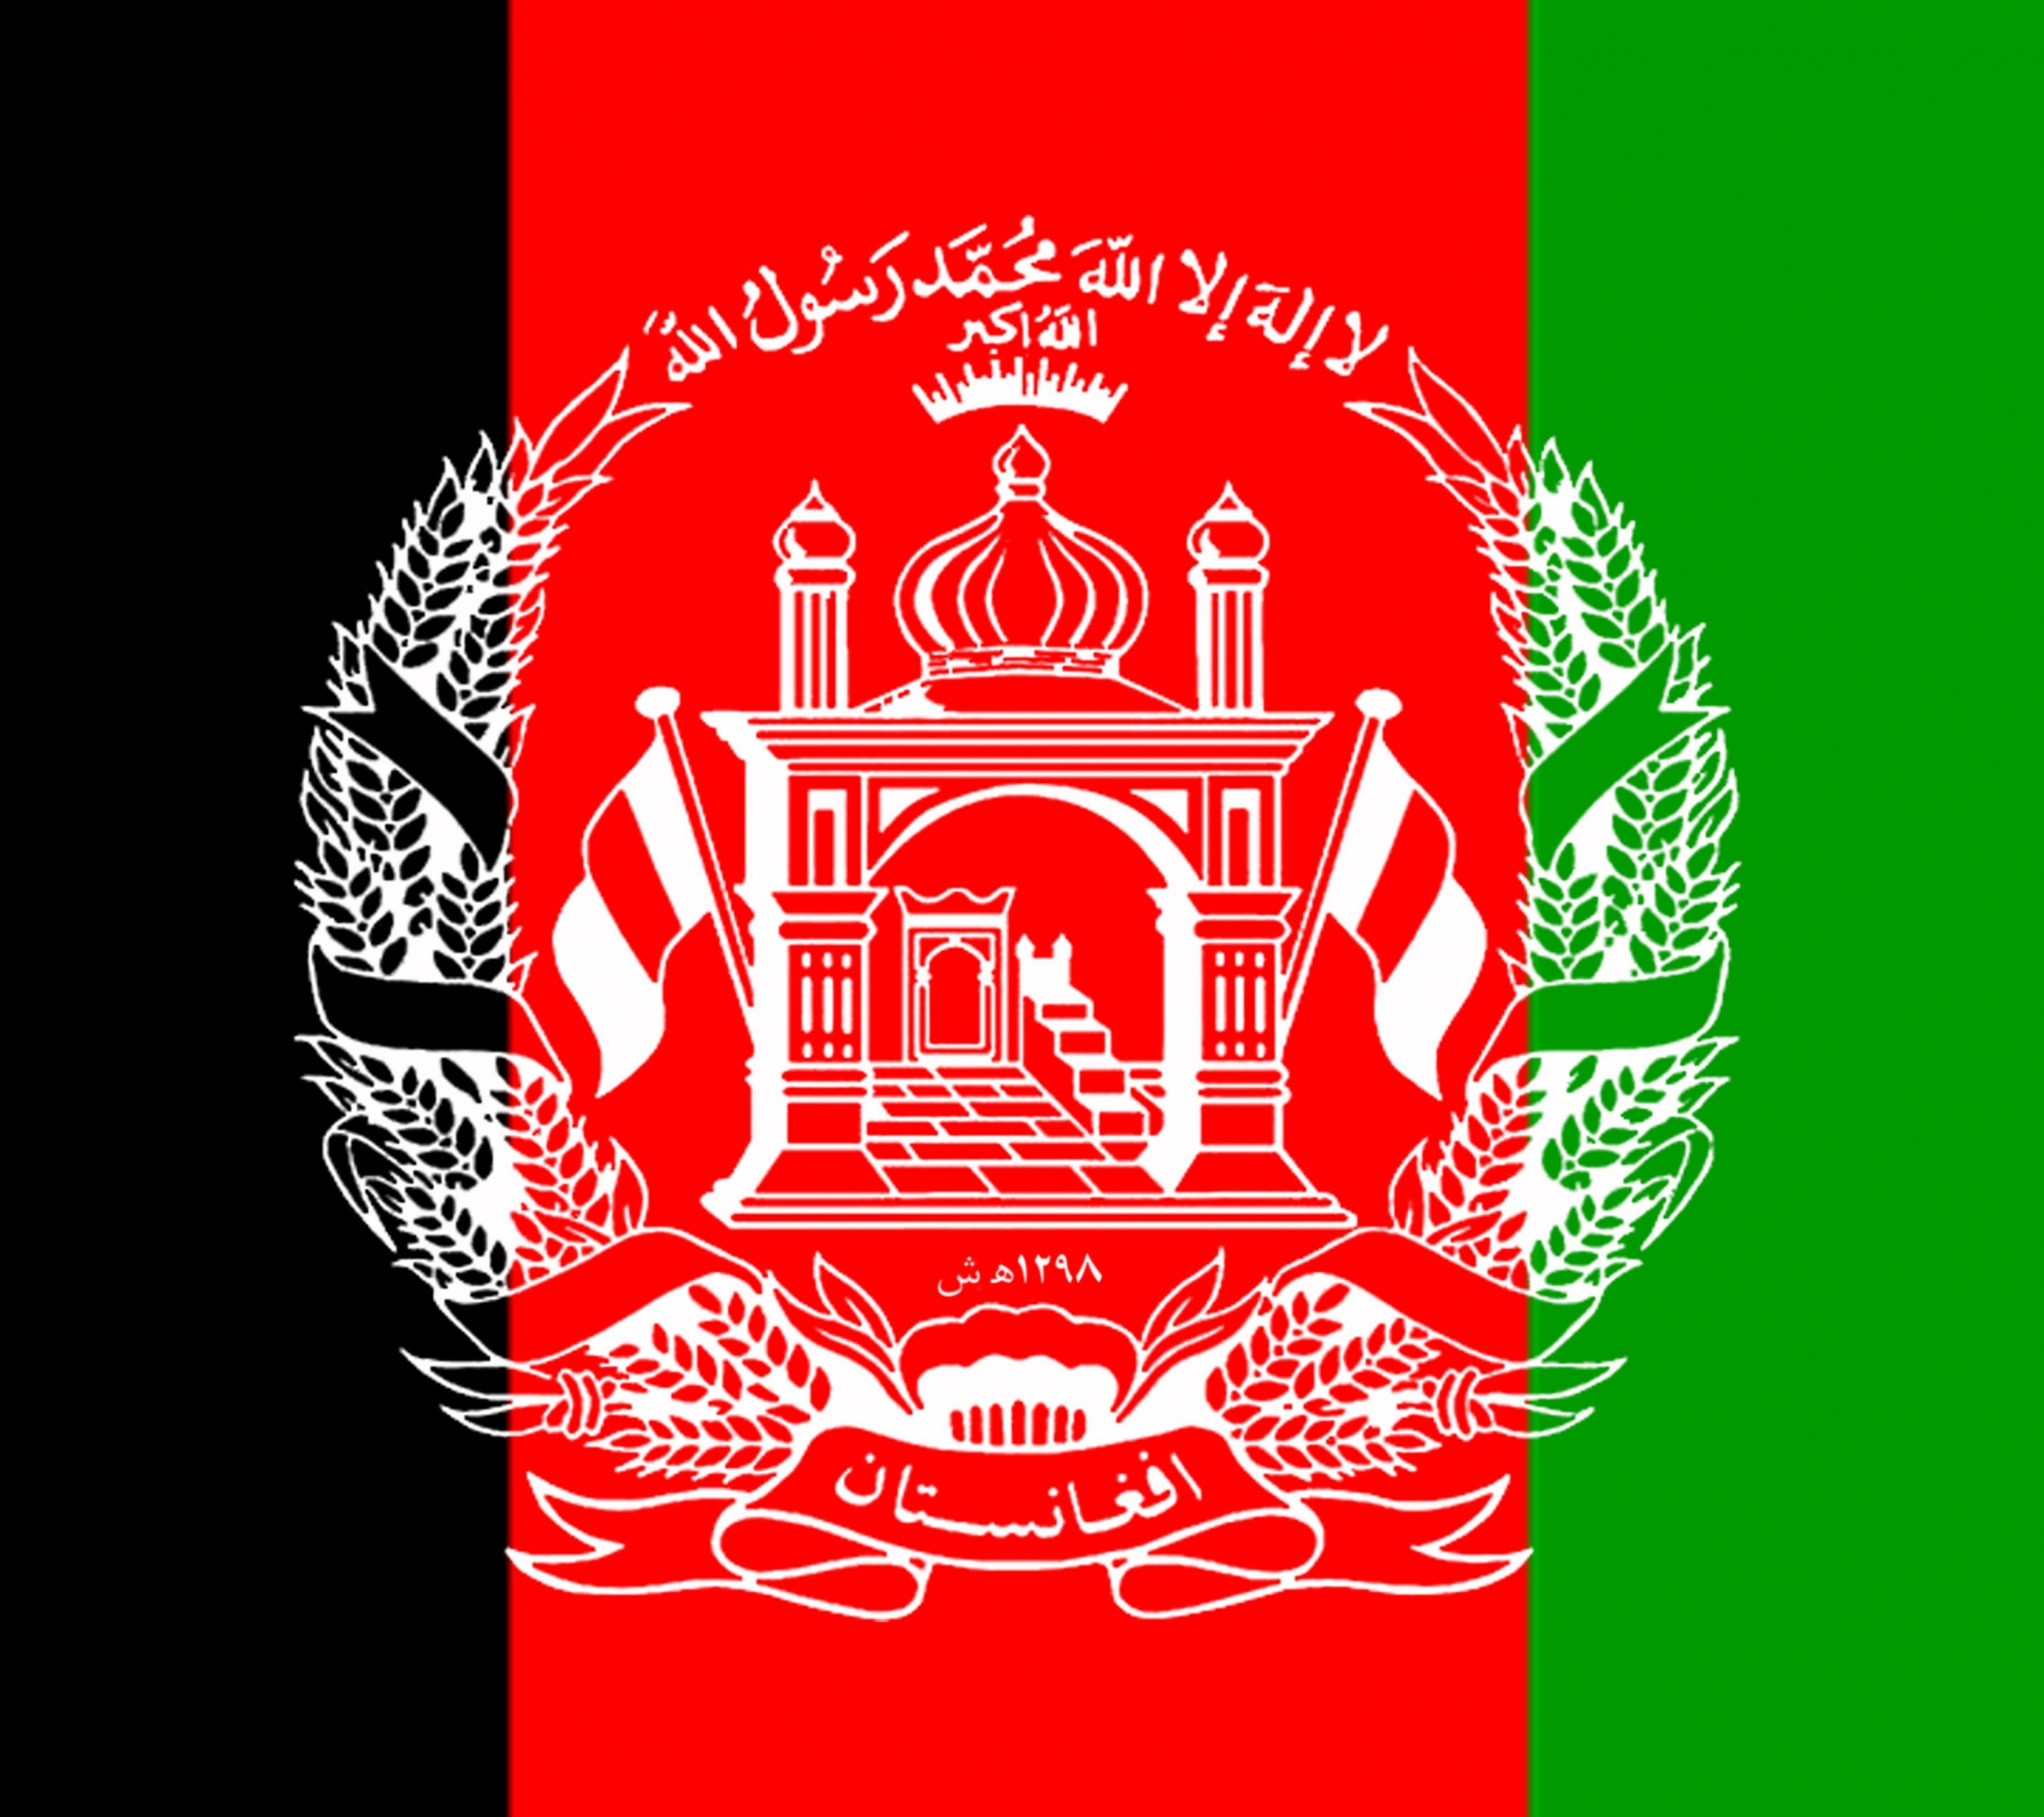 Скачать обои бесплатно Флаги, Разное, Флаг Афганистана картинка на рабочий стол ПК